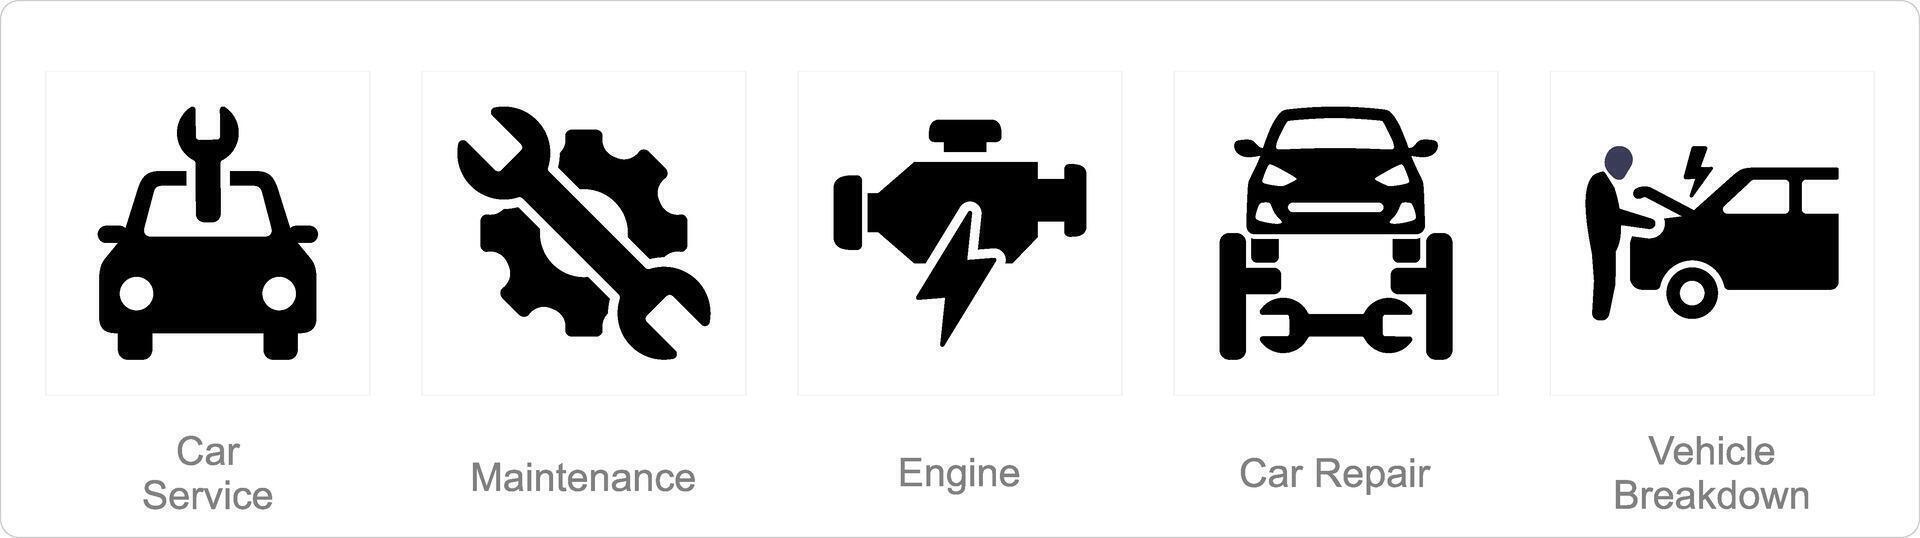 uma conjunto do 5 carro ícones Como carro serviço, manutenção, motor vetor